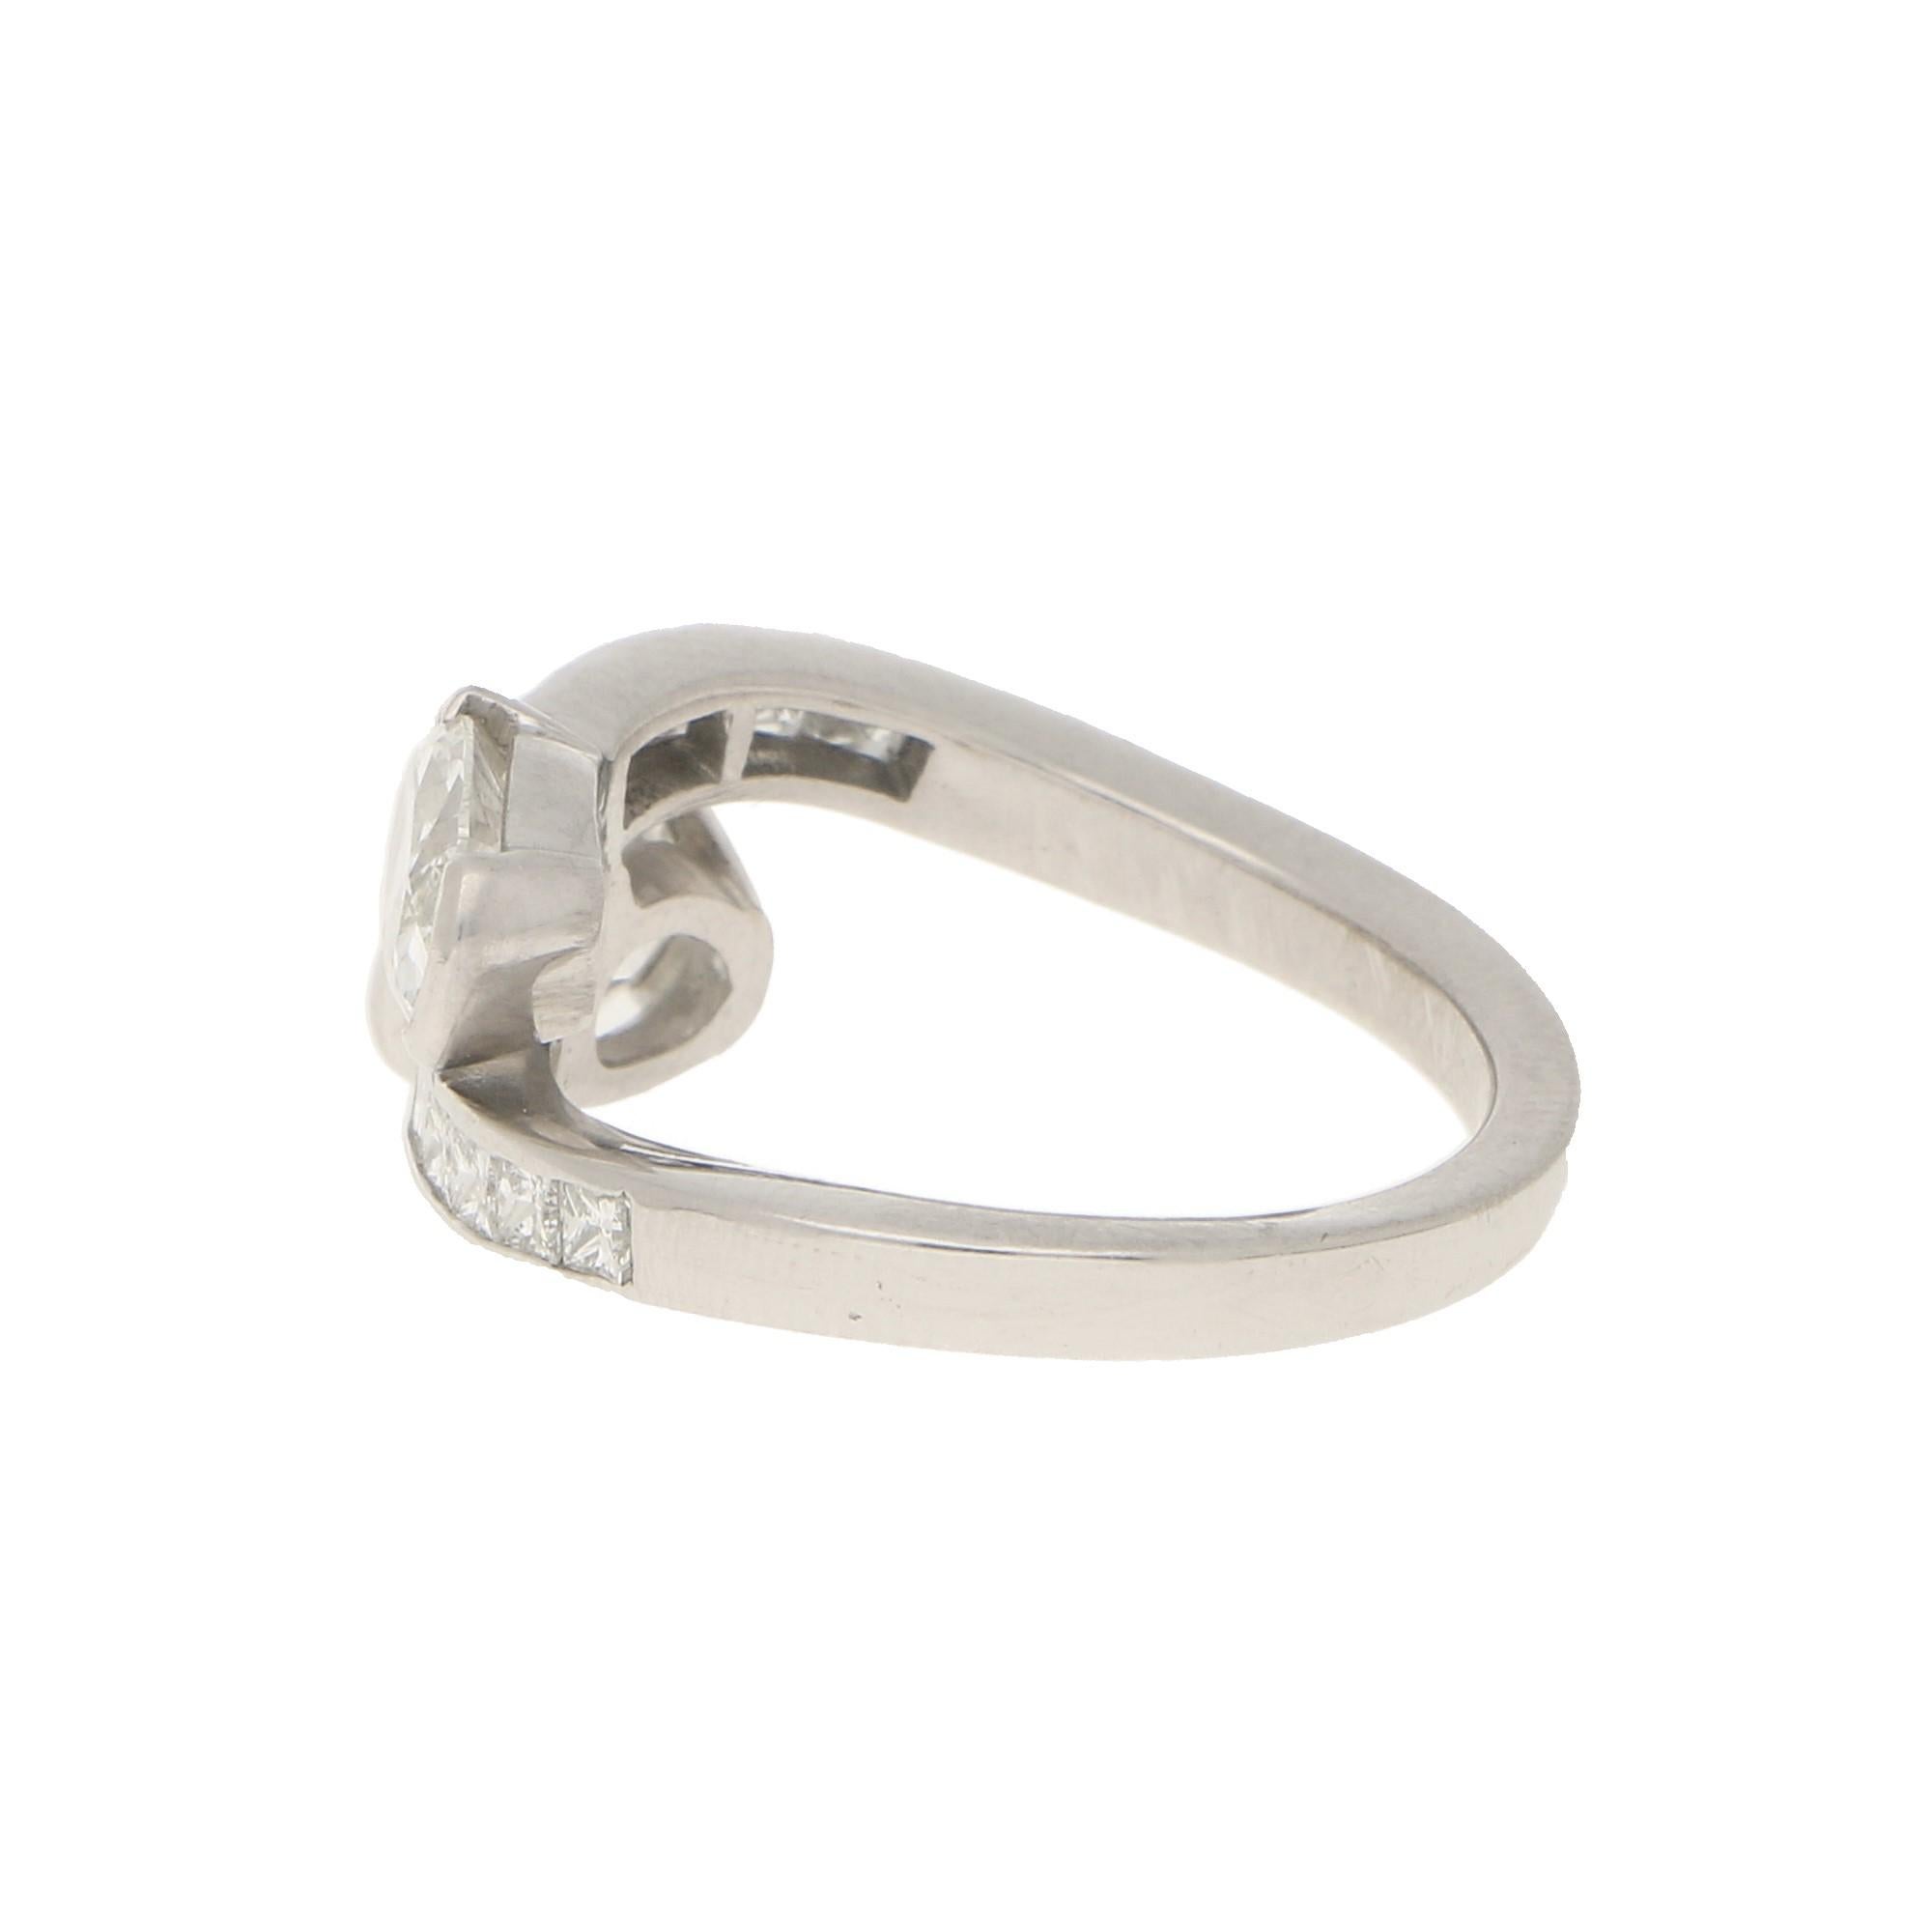 Art Deco Inspired Toi-et-Moi Crossover Ring Set in 18 Karat White Gold 1